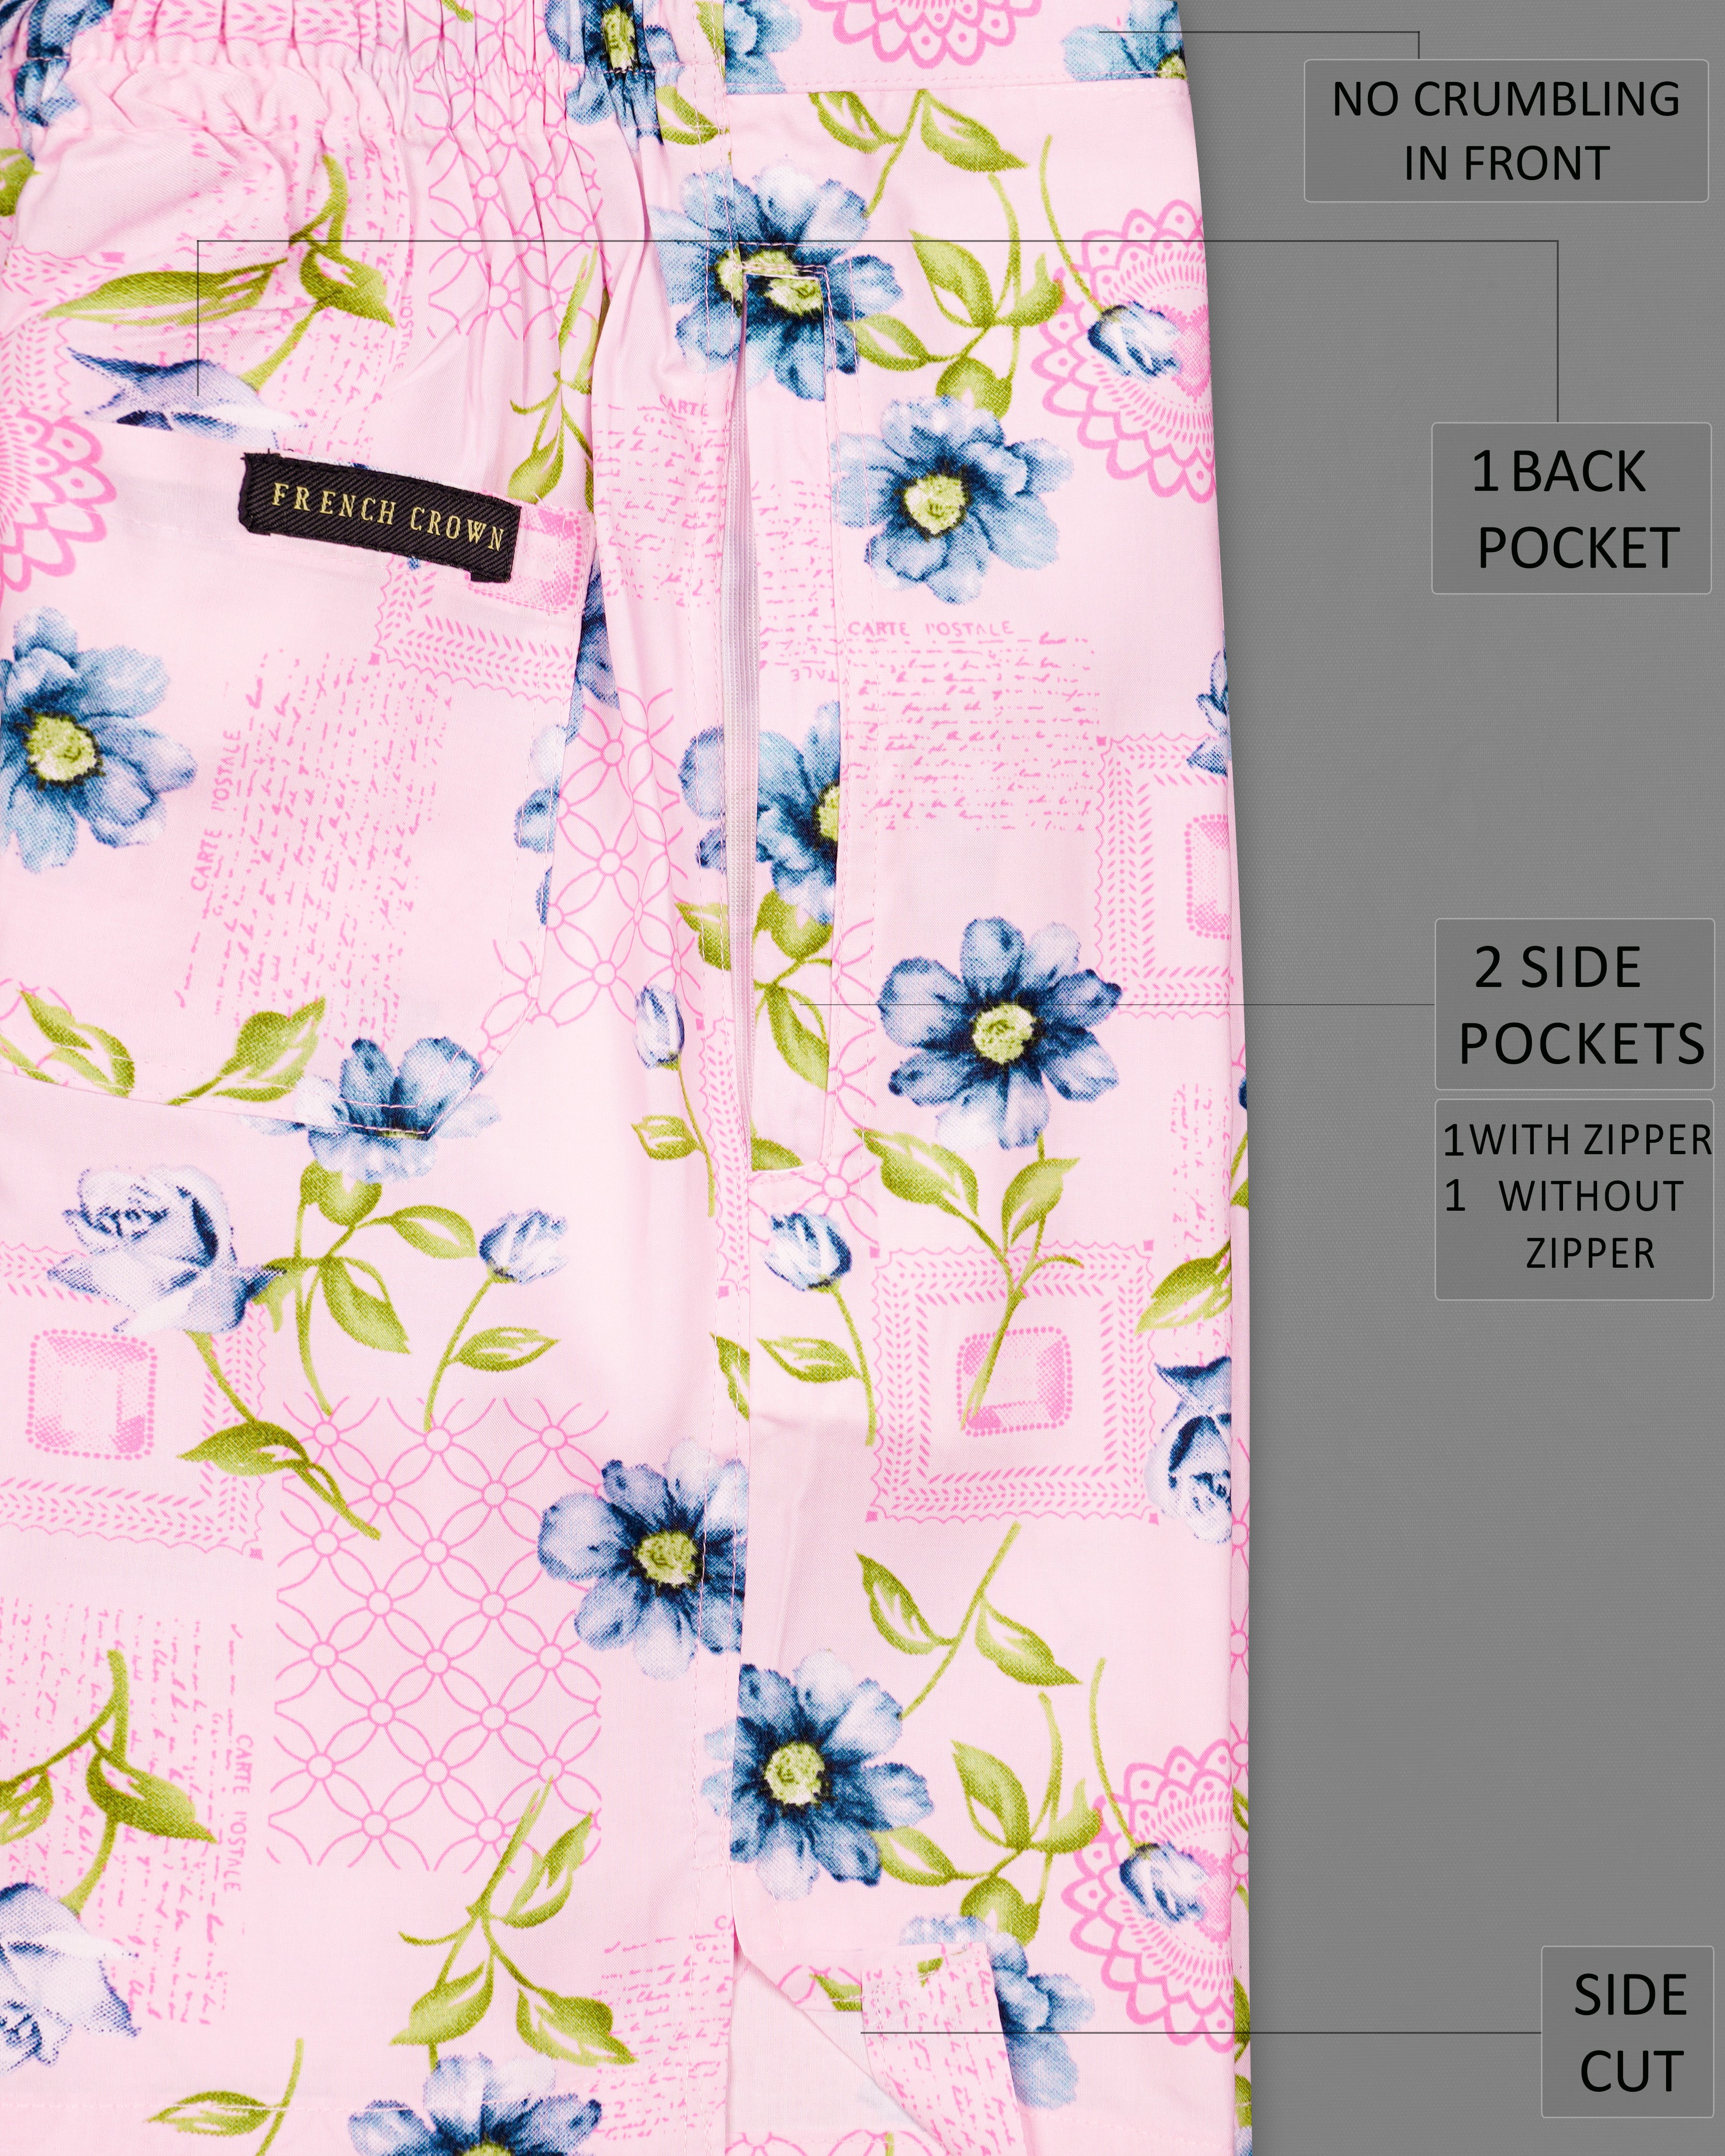 Azalea Pink Multicolour Floral Printed Premium Cotton Shorts SR229-28, SR229-30, SR229-32, SR229-34, SR229-36, SR229-38, SR229-40, SR229-42, SR229-44